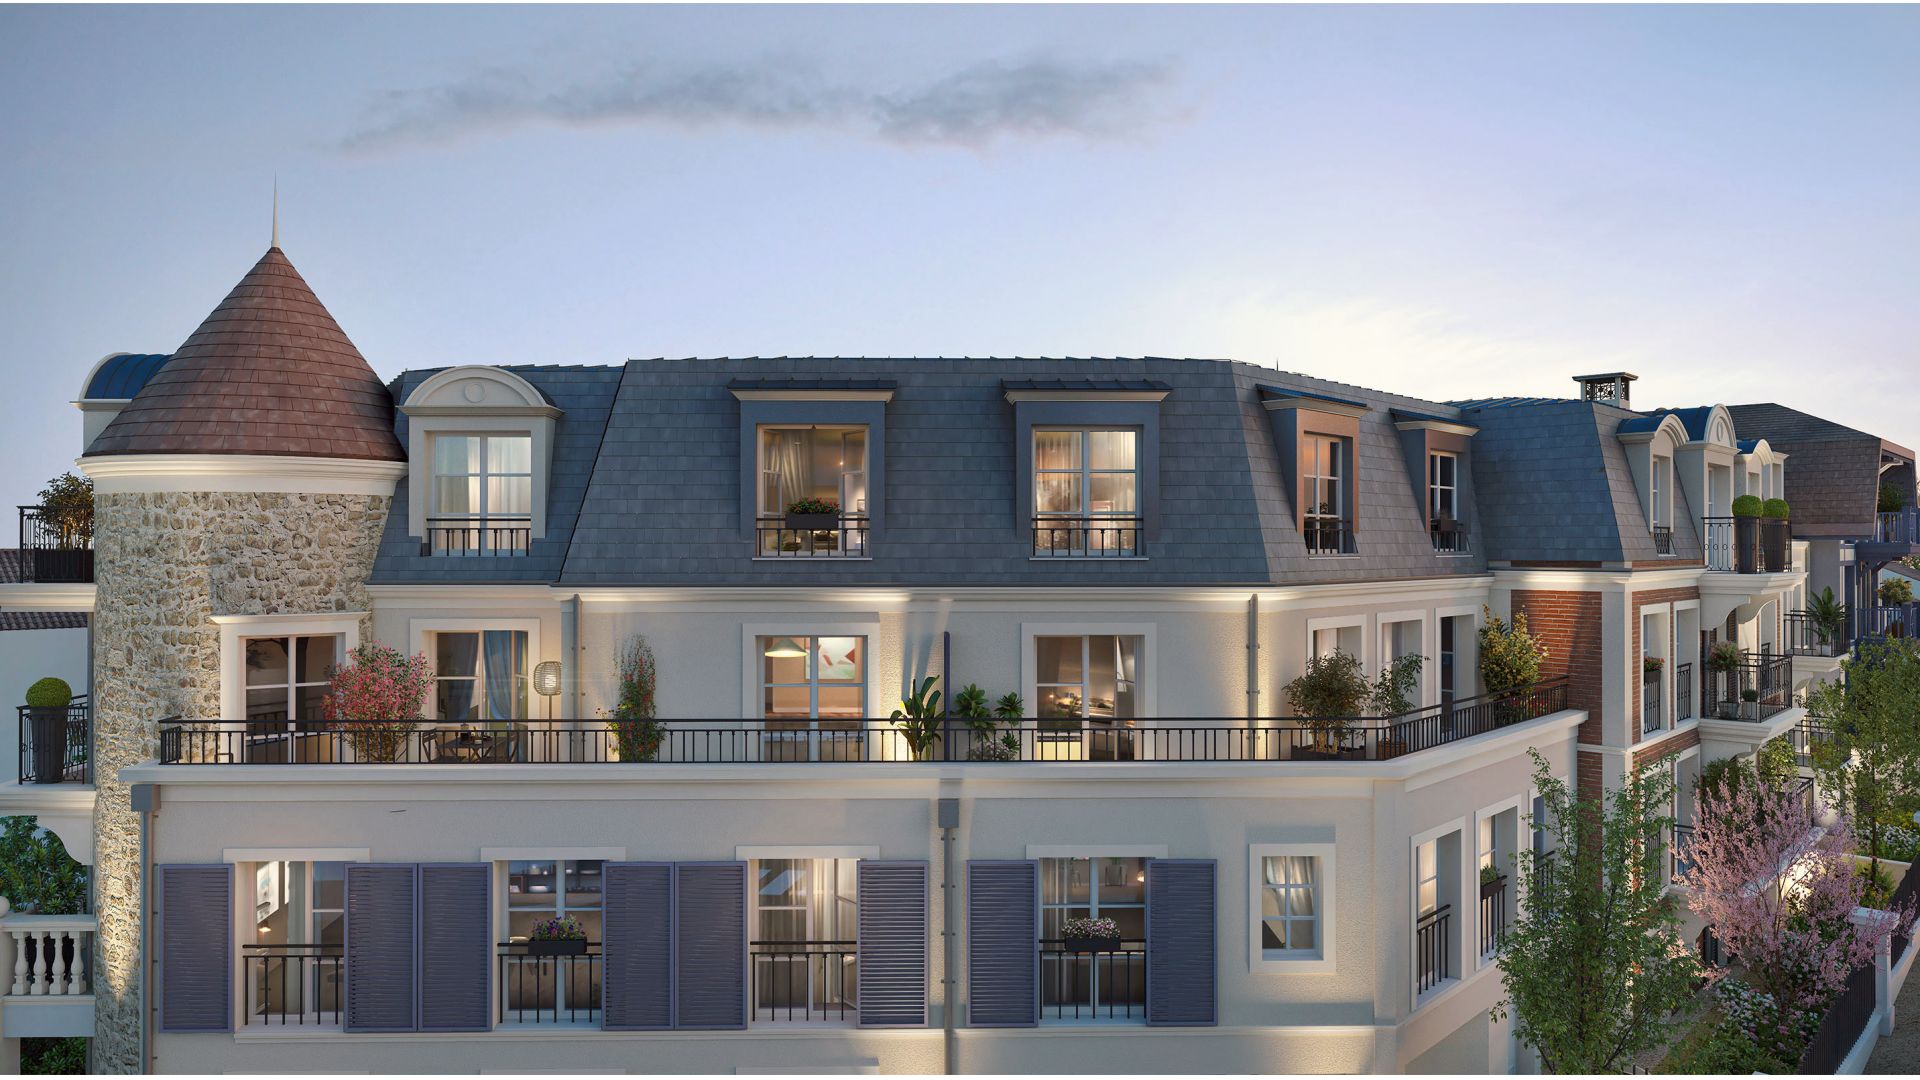 Greencity immobilier - achat appartements neufs du T2 au T4 - Résidence Square Victoria - Villiers-Sur-Marne (4350